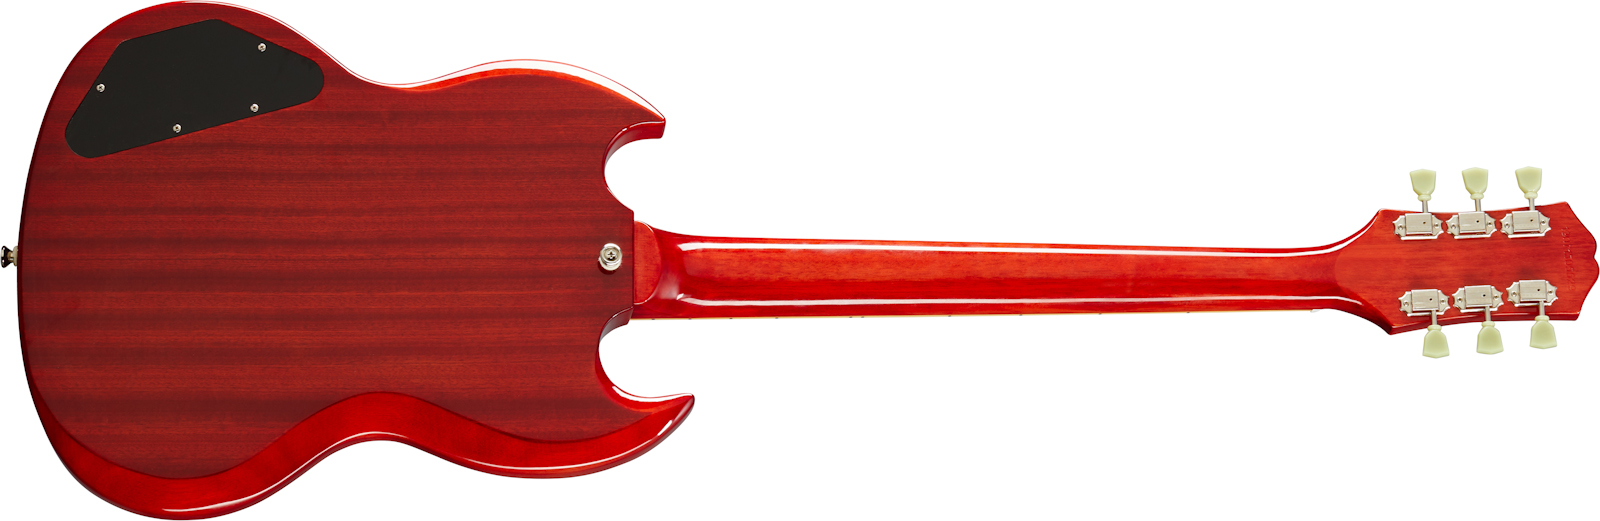 Epiphone Sg Standard 1961 2h Ht Lau - Vintage Cherry - Double cut electric guitar - Variation 1